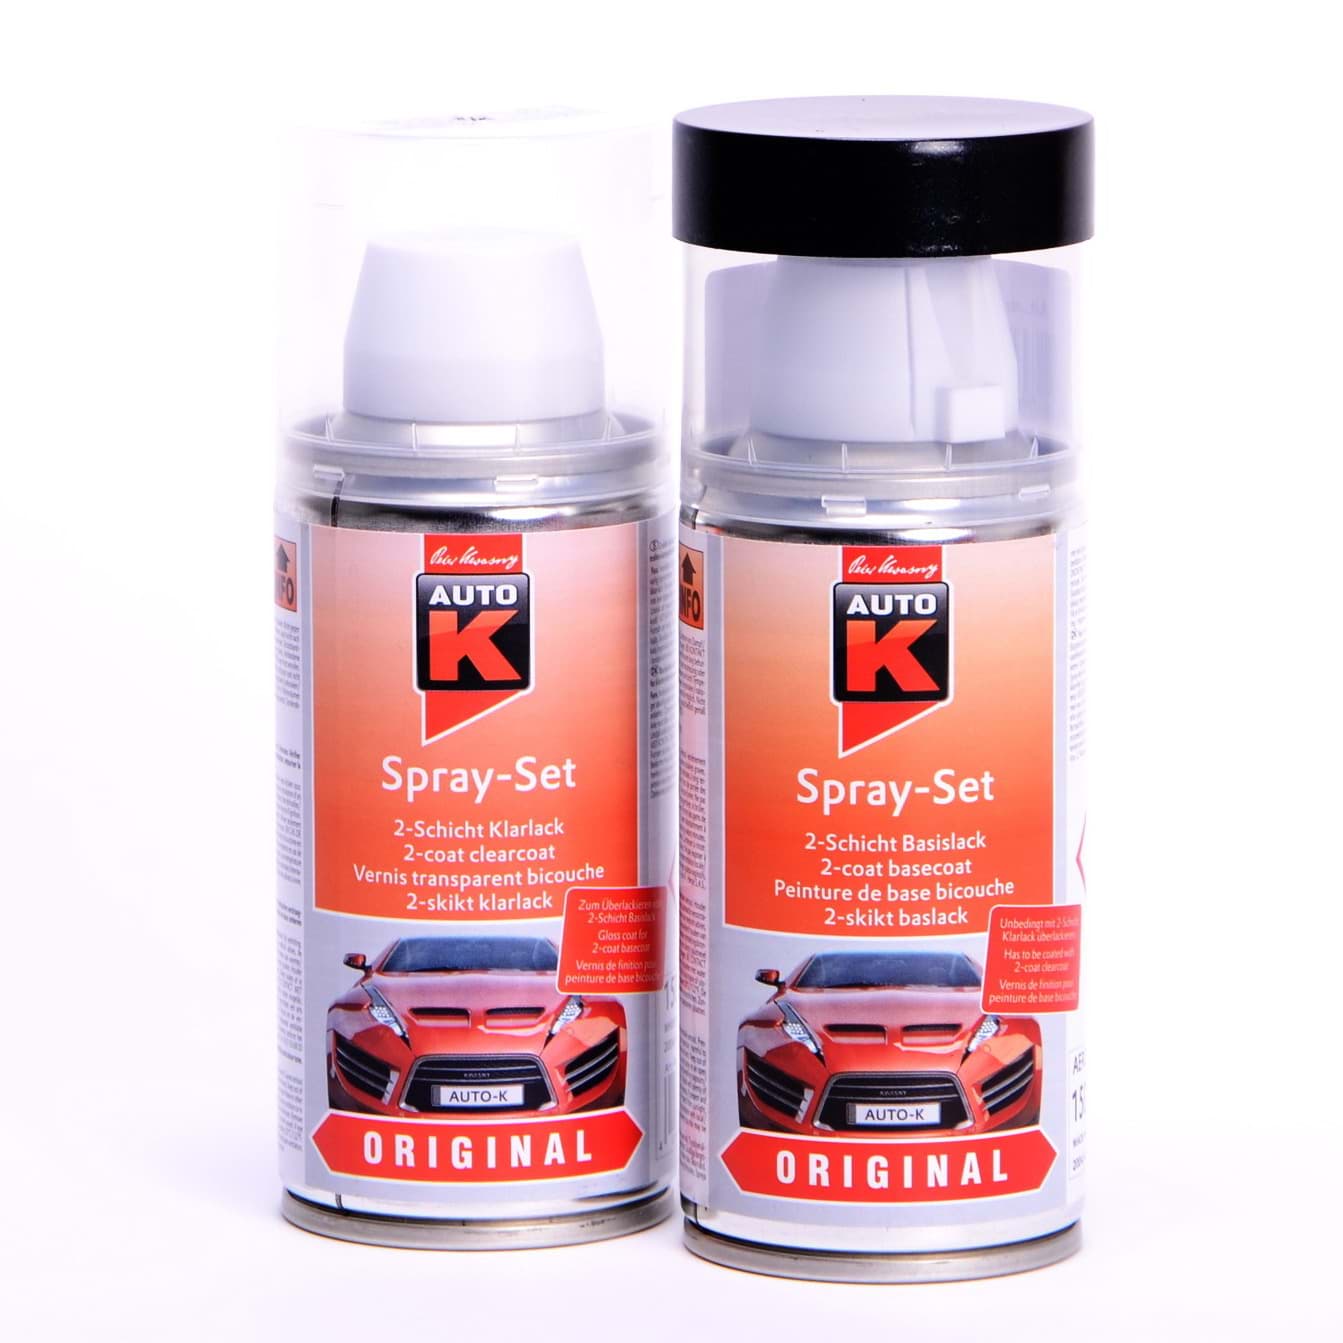 Afbeelding van Auto-K Spray-Set Autolack für Opel 489 Champagner met 21434